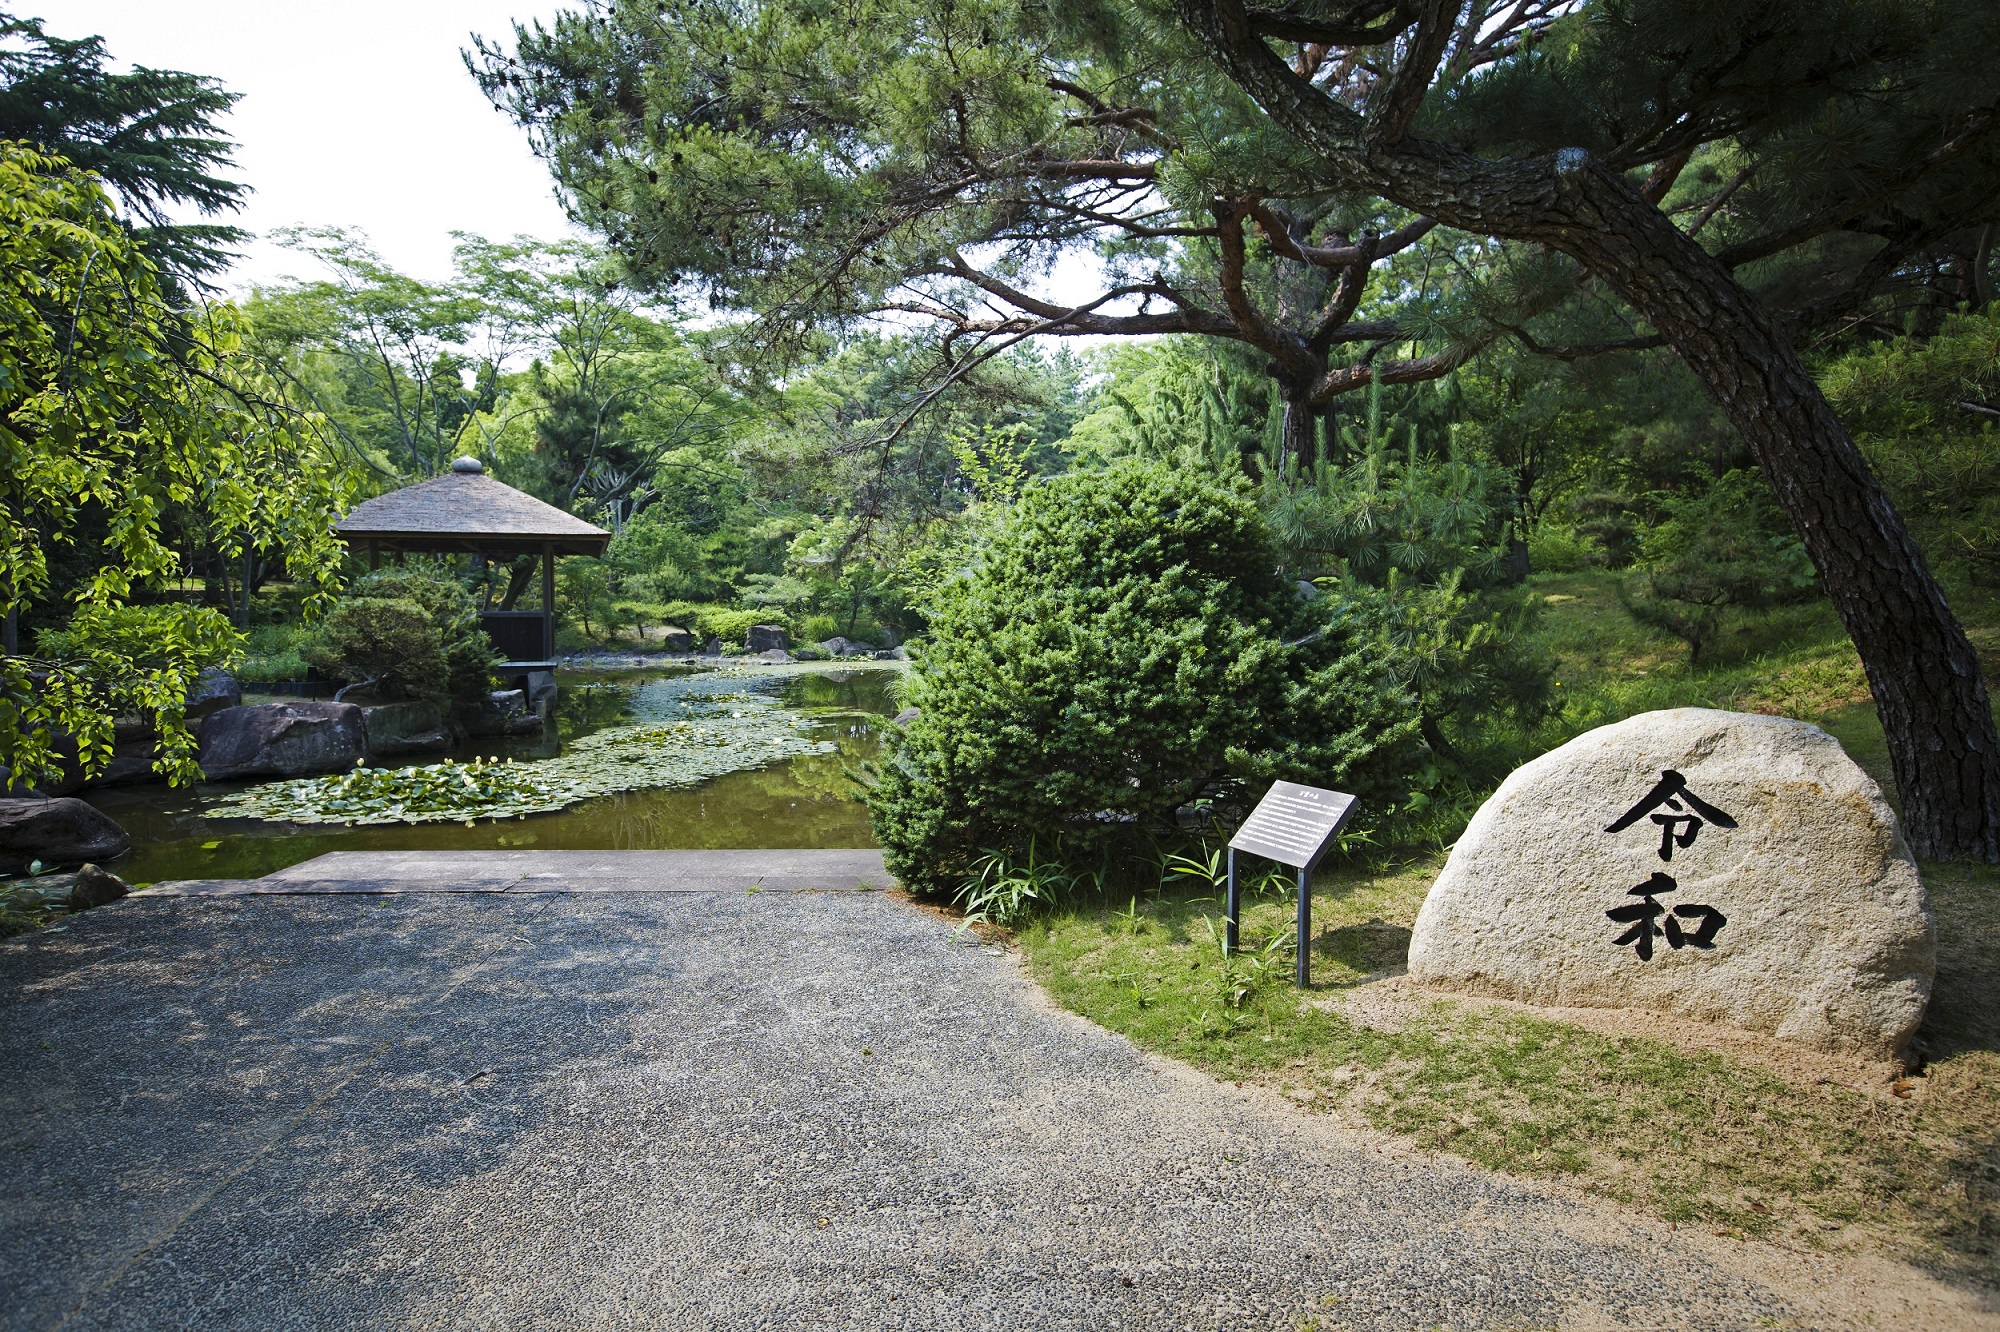 平安時代のいなみ野と瀬戸内海を形造った日本庭園「万葉の森」